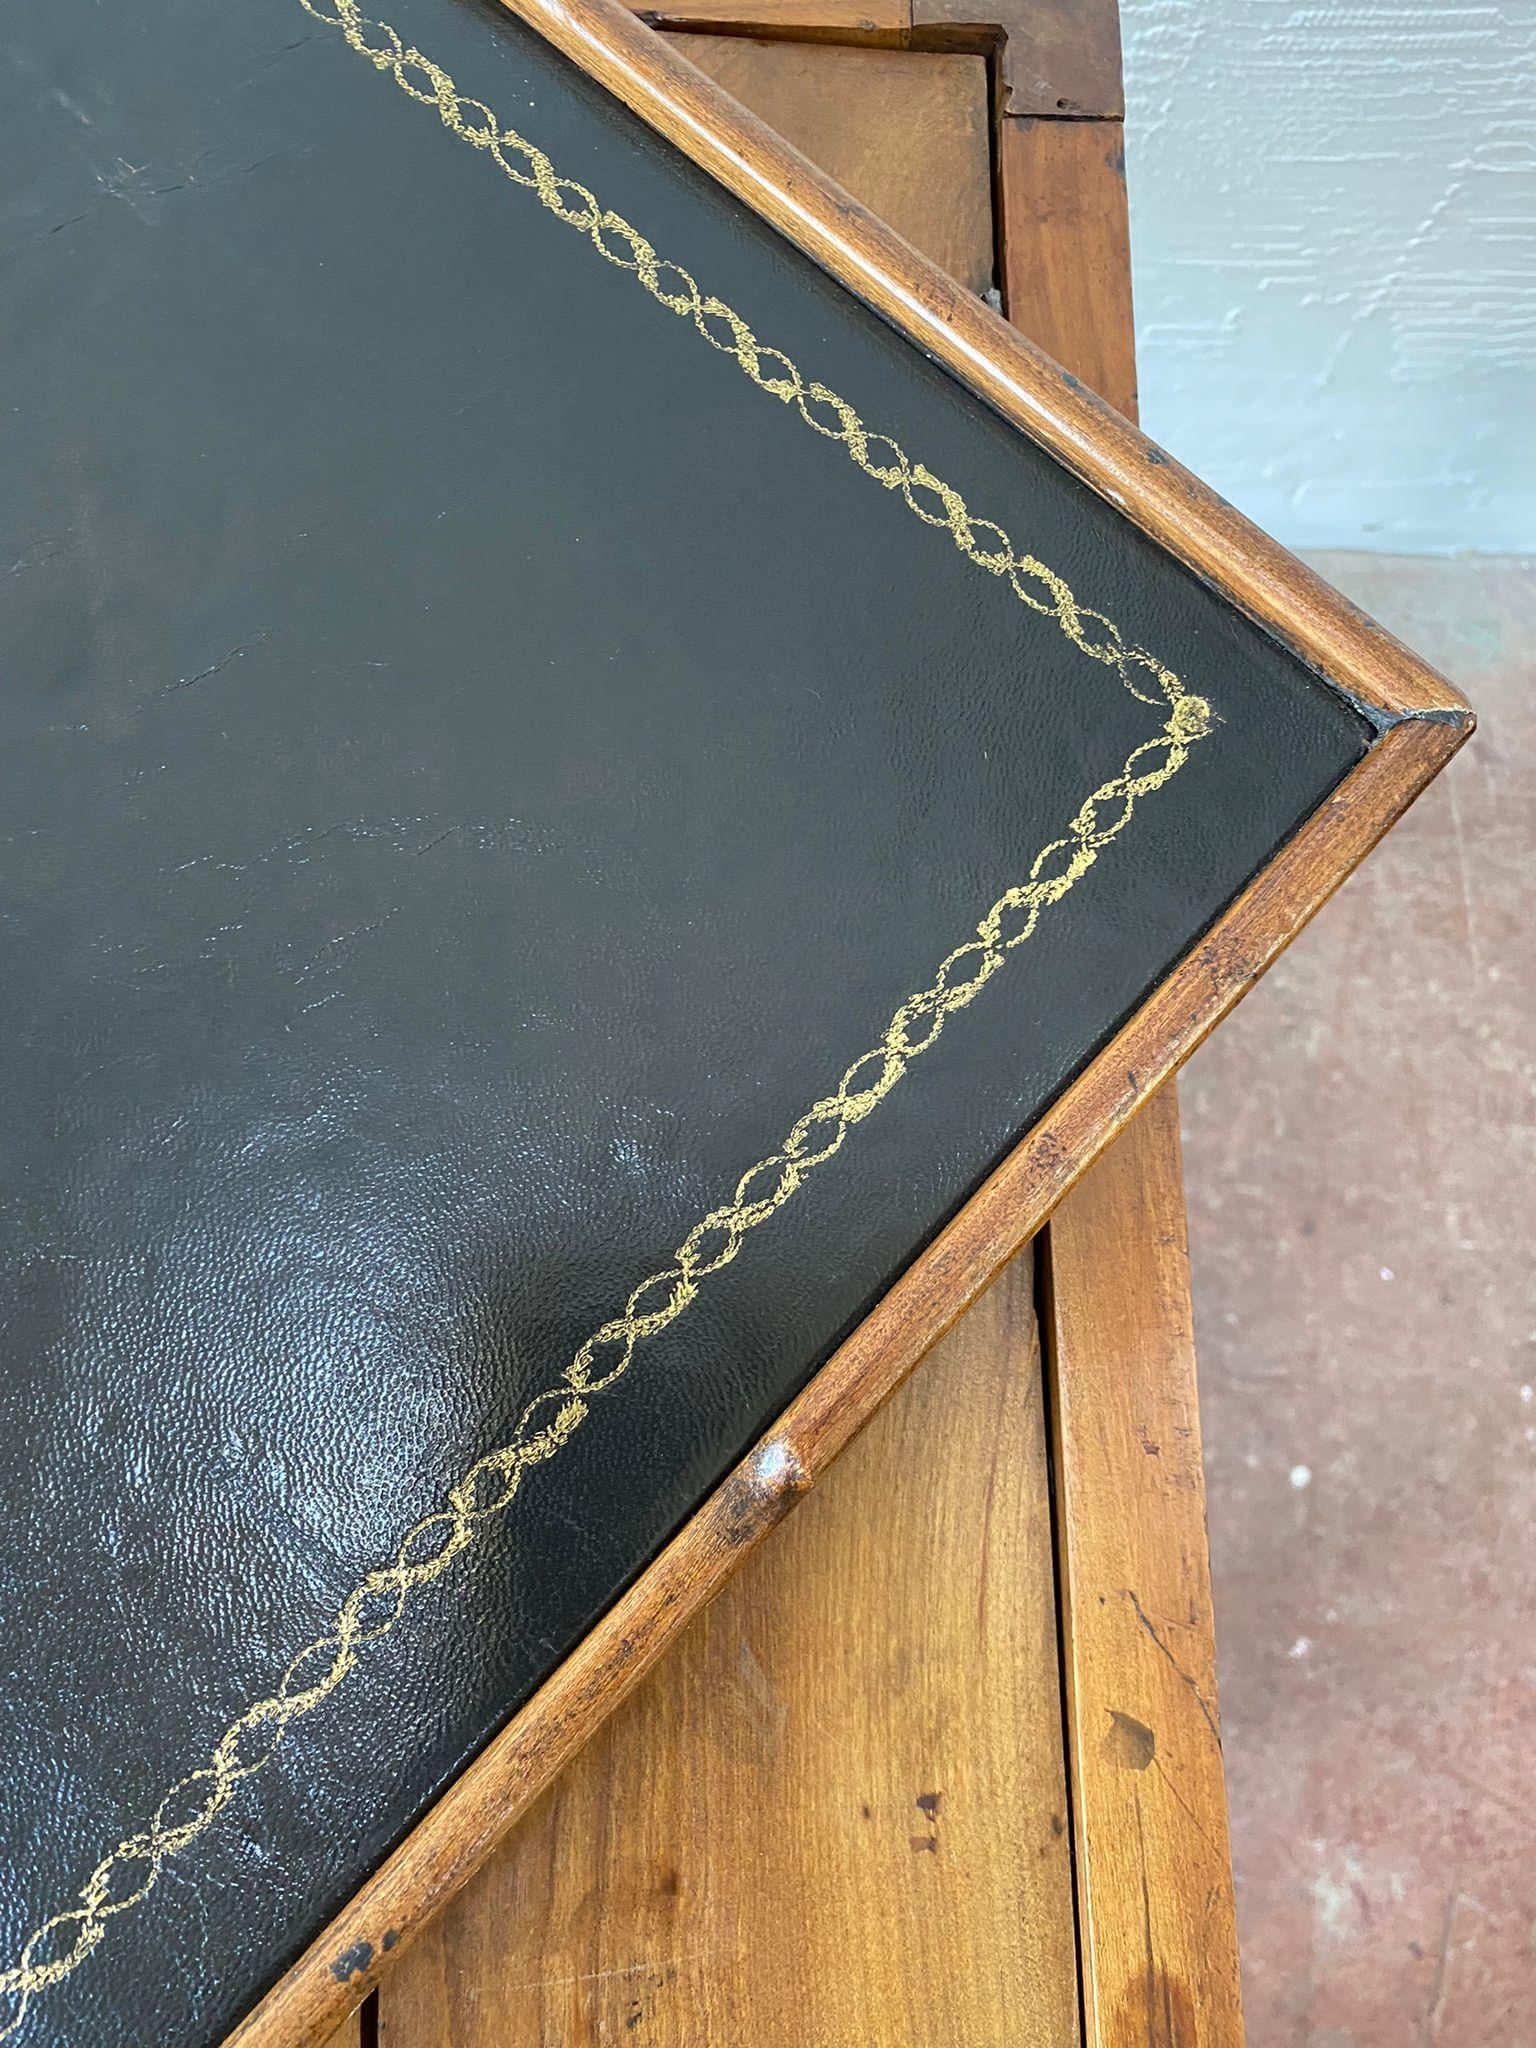 Ein 19. Jahrhundert Obstholz eingelegt Schreibtisch / Konsole mit Tric Trac Spiele Tisch innerhalb. Das abnehmbare Oberteil mit Baize für Karten und Lederoberfläche auf der Rückseite. Die Spielfläche ist eine wunderbare Einlage in leuchtendem Grün